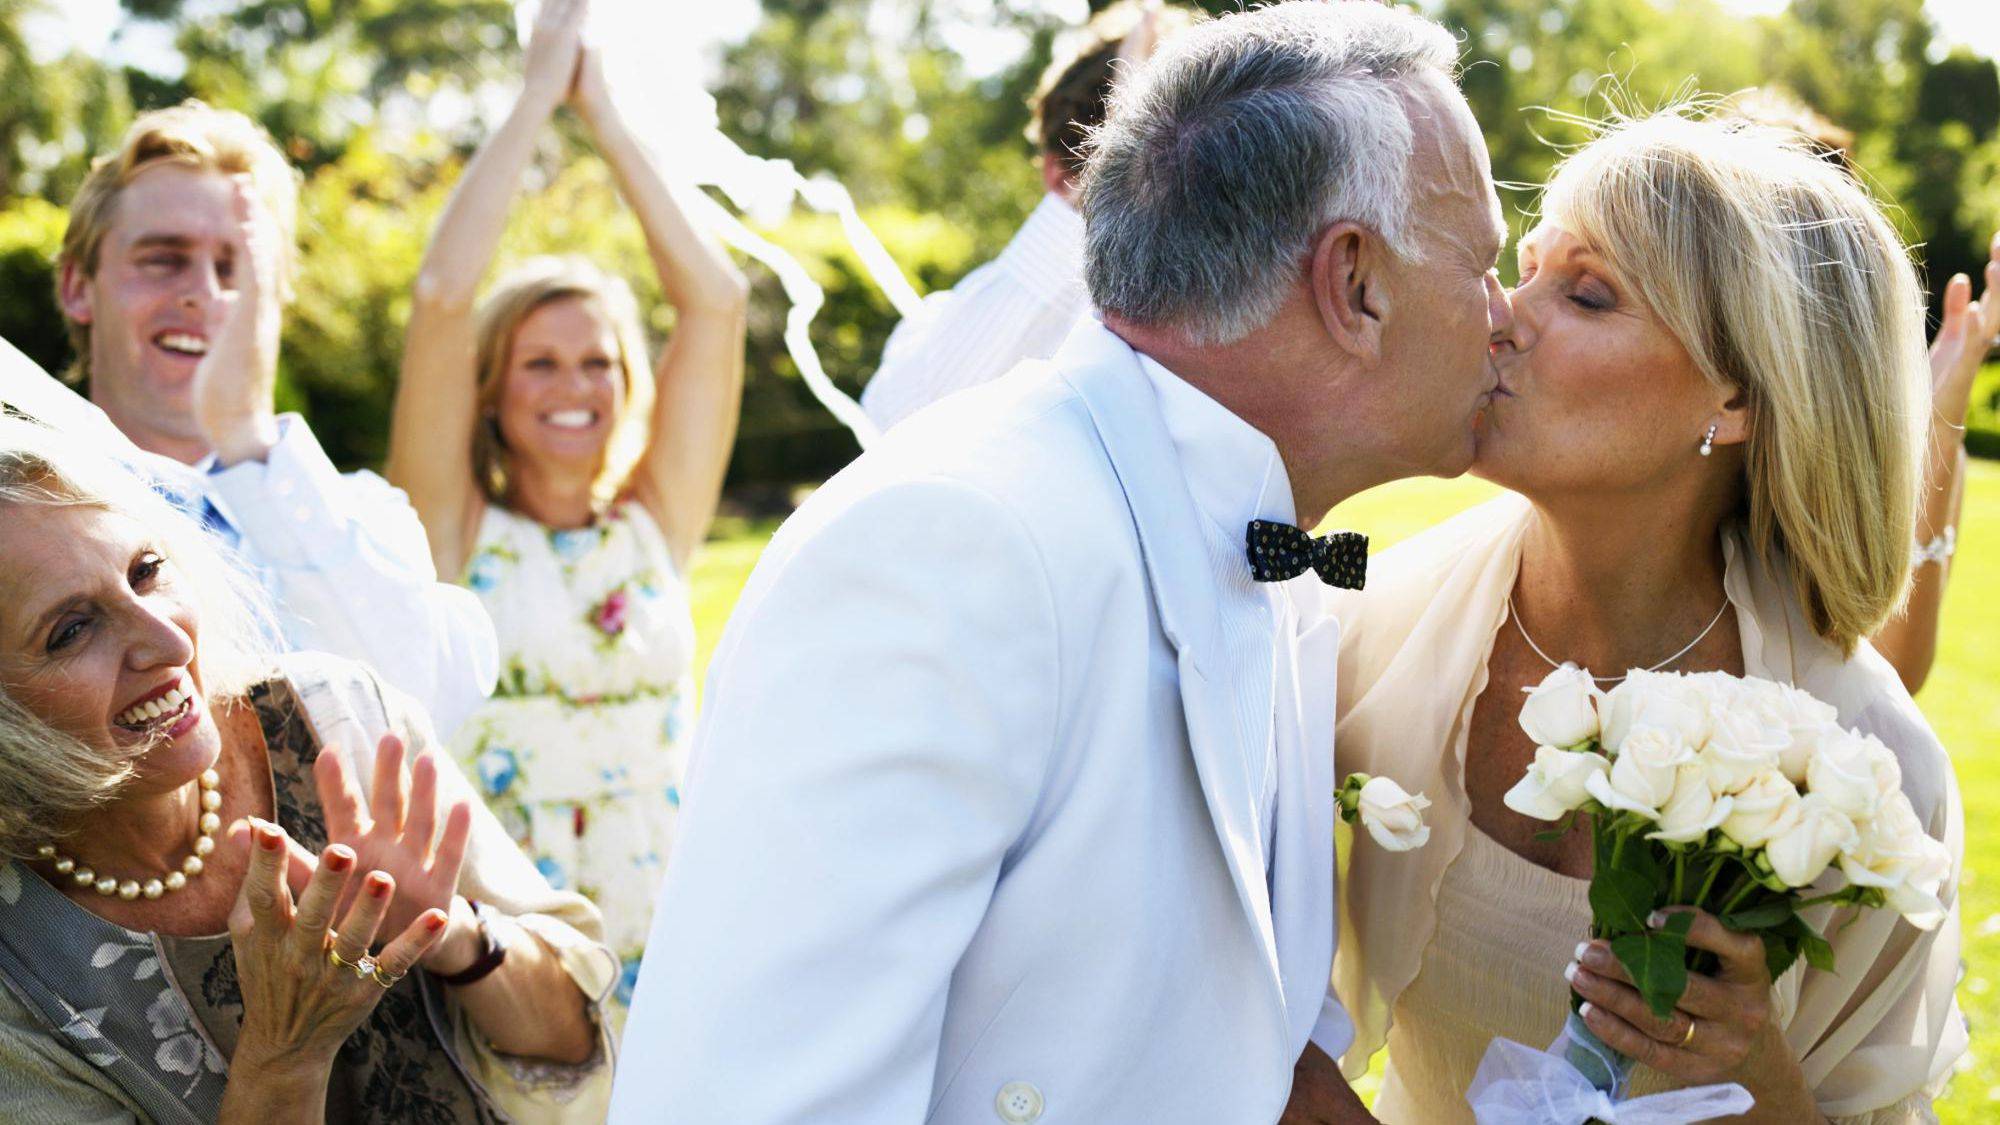 7 лет свадьбы: какая свадьба? Все о семейных традициях